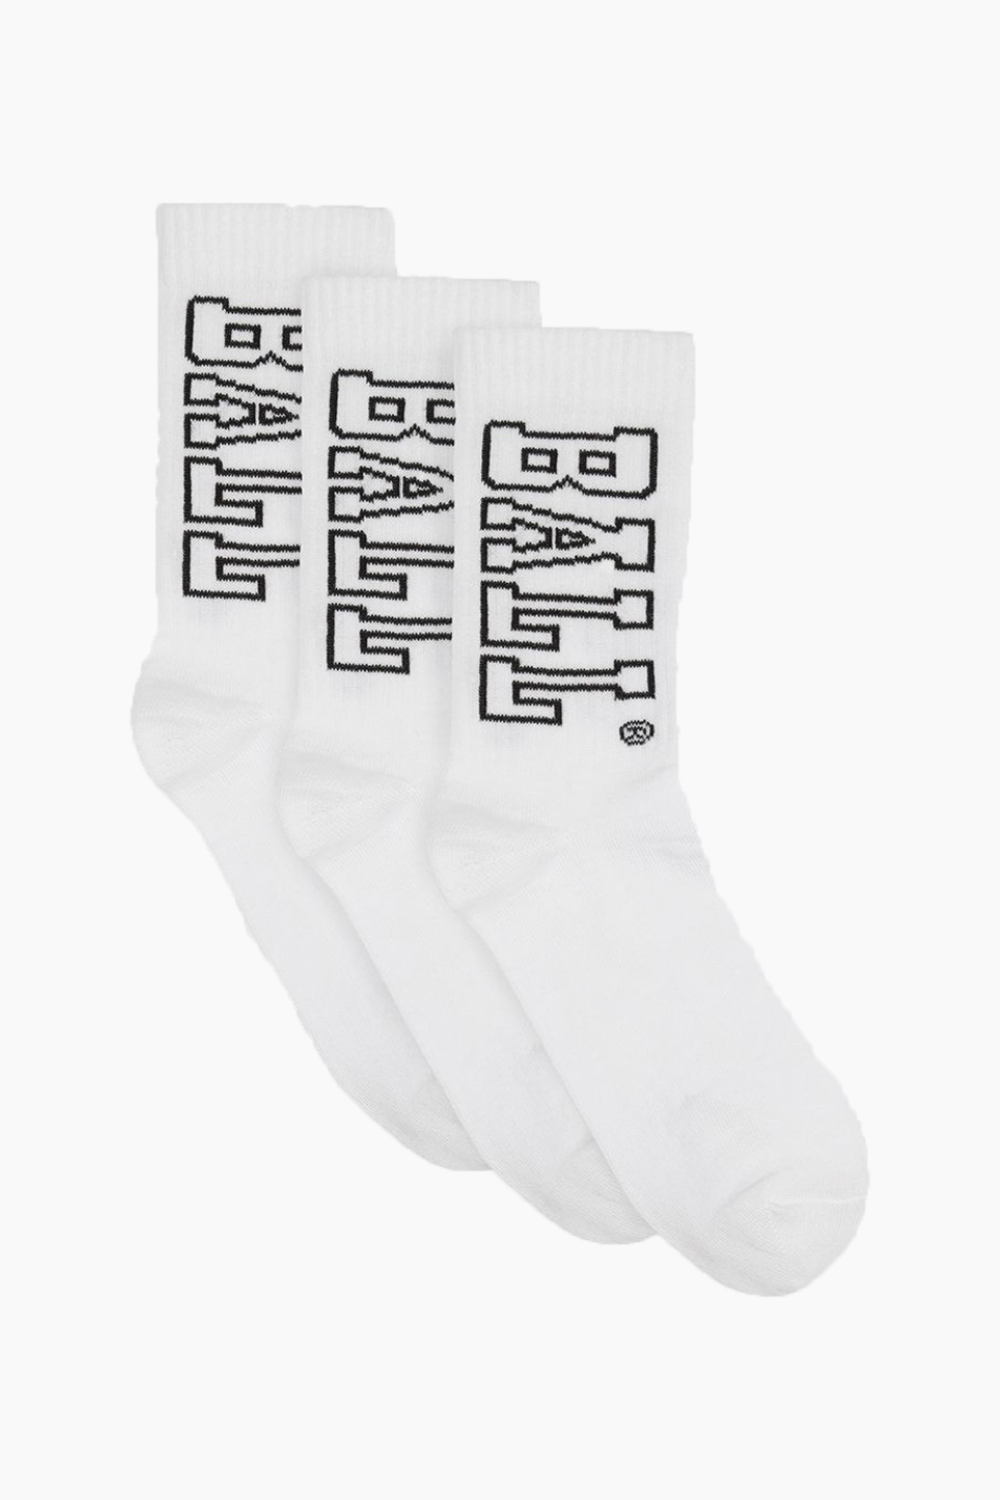 Ball Socks 3-pack - White/Black - Ball